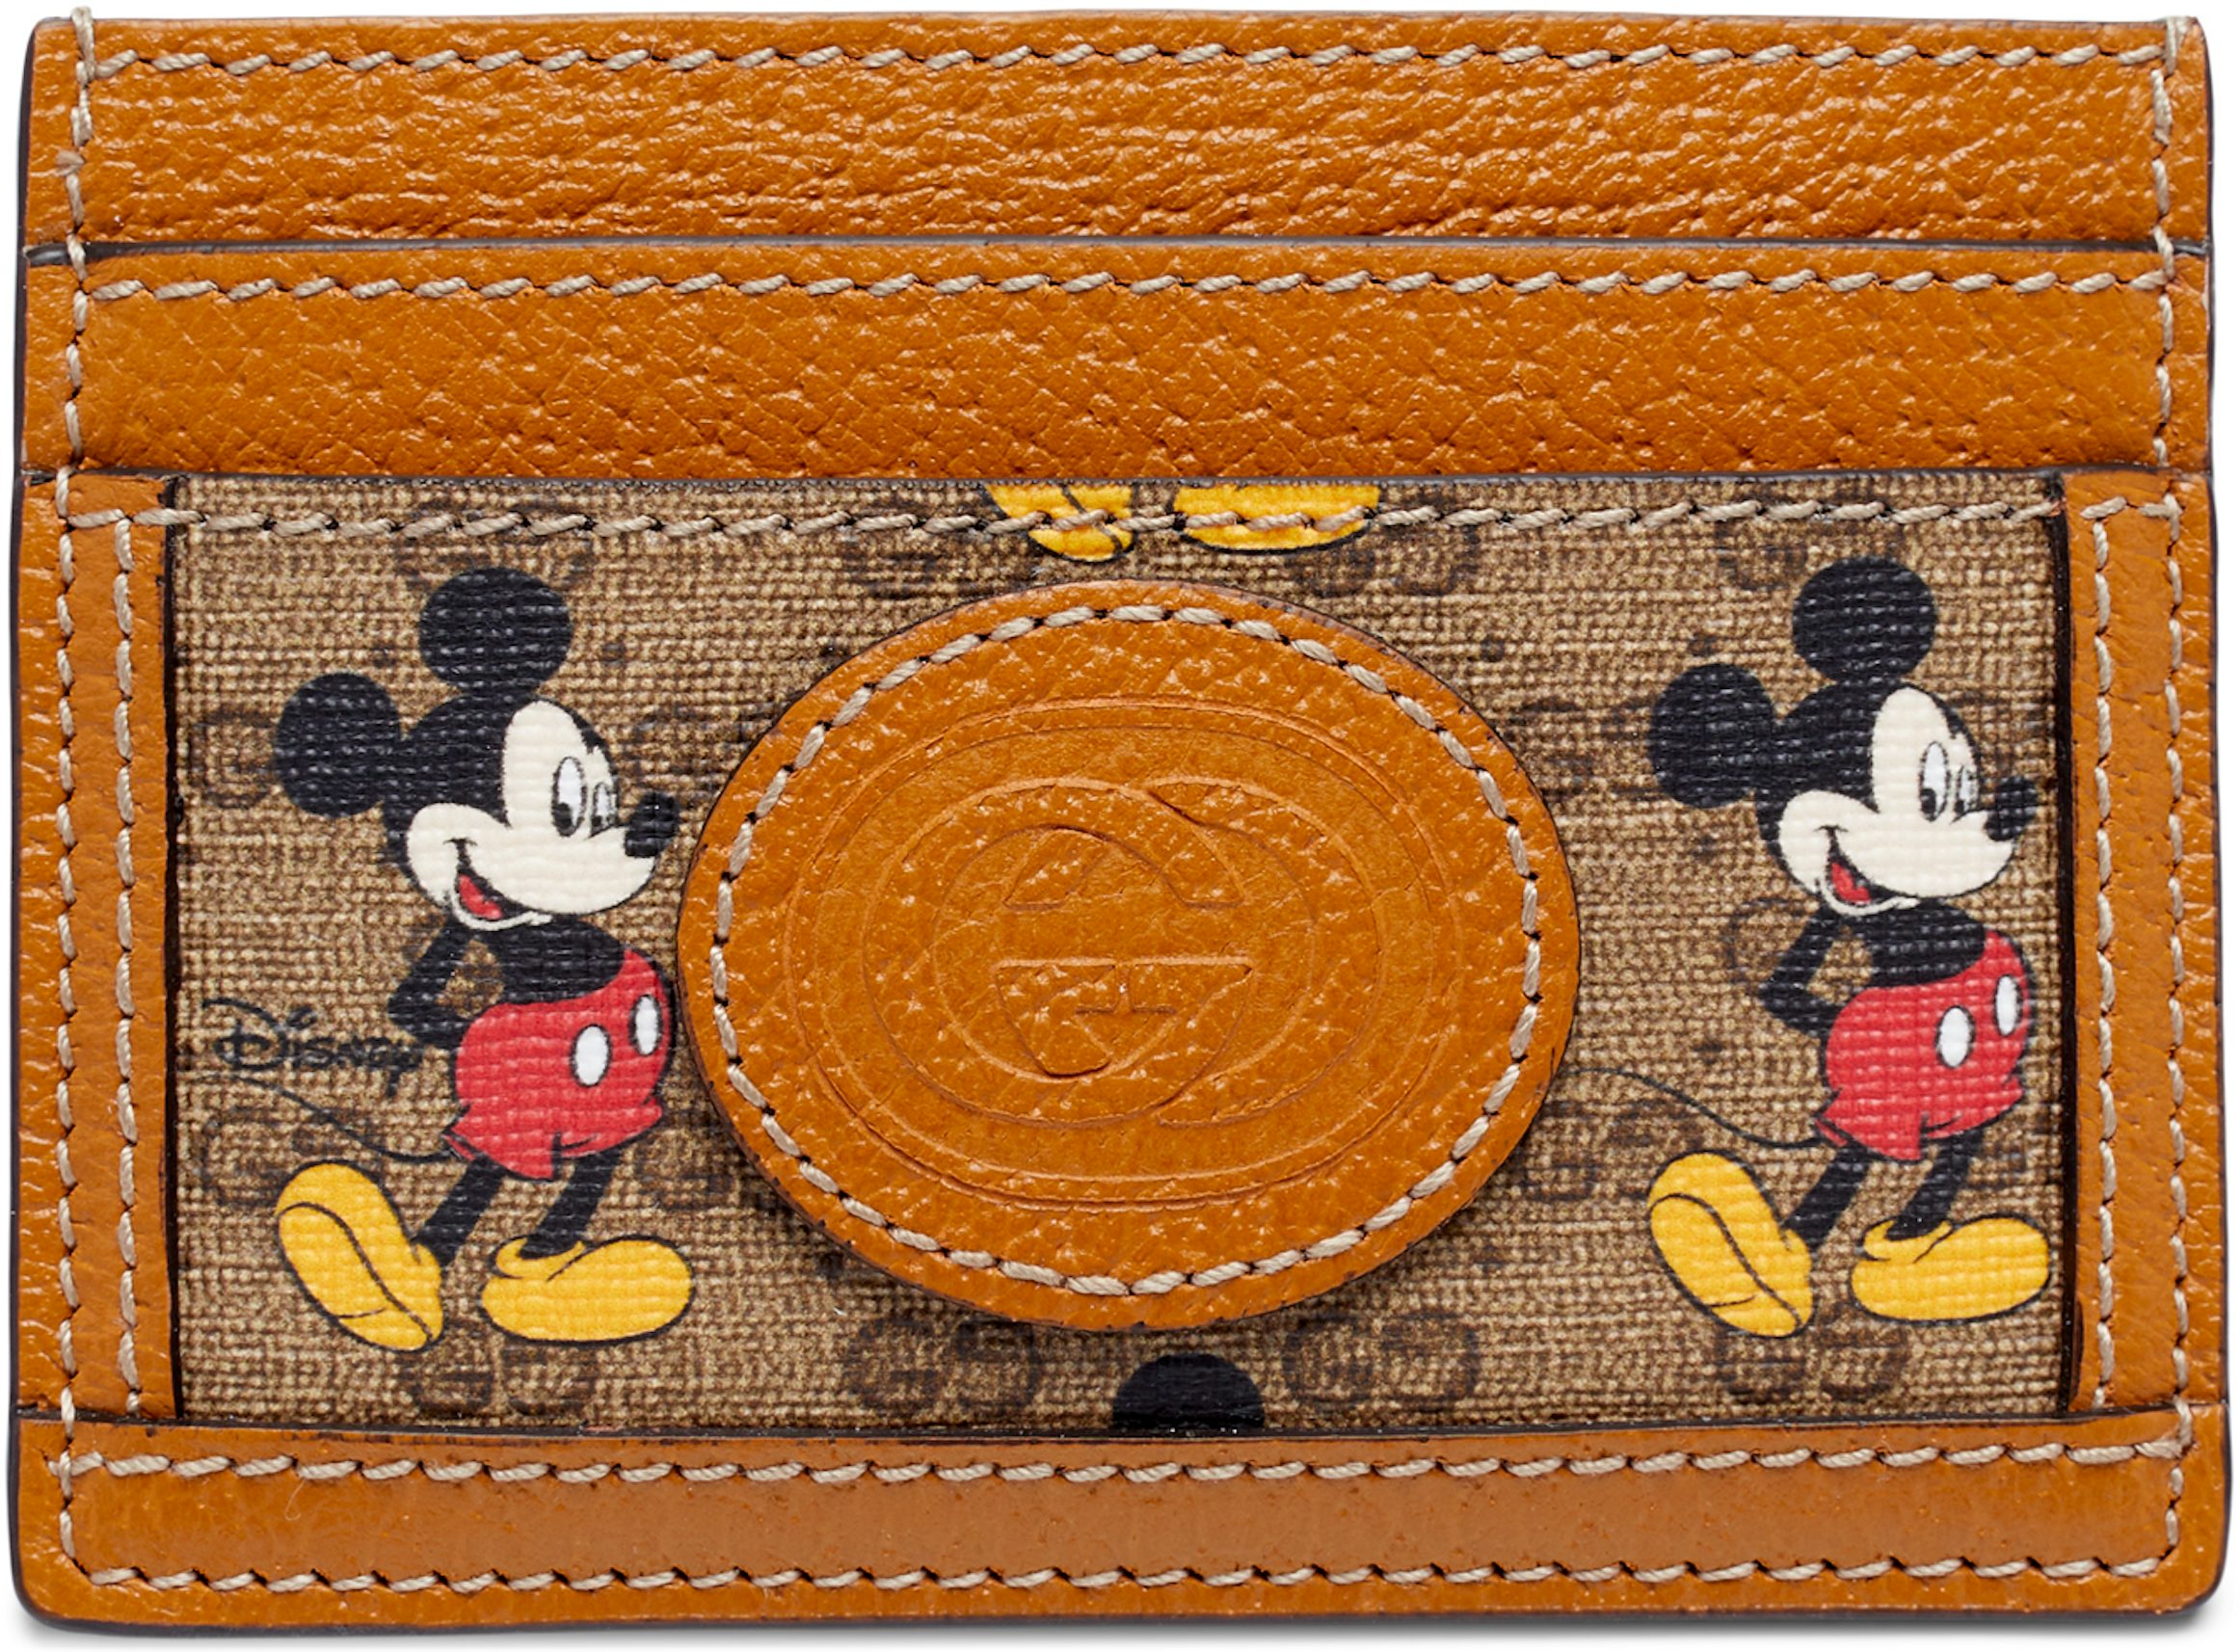 Gucci x Disney Card Case Mini GG Supreme Mickey Mouse Beige in